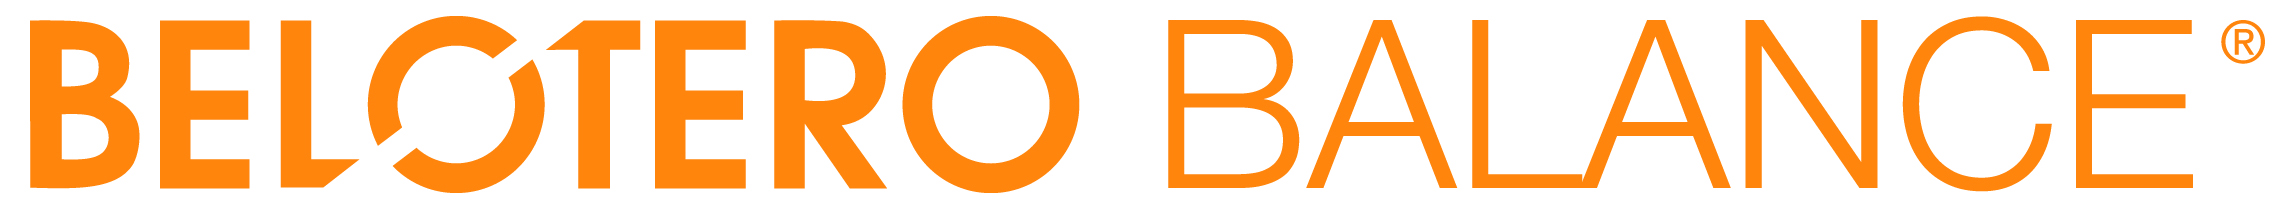 Belotero balance logo